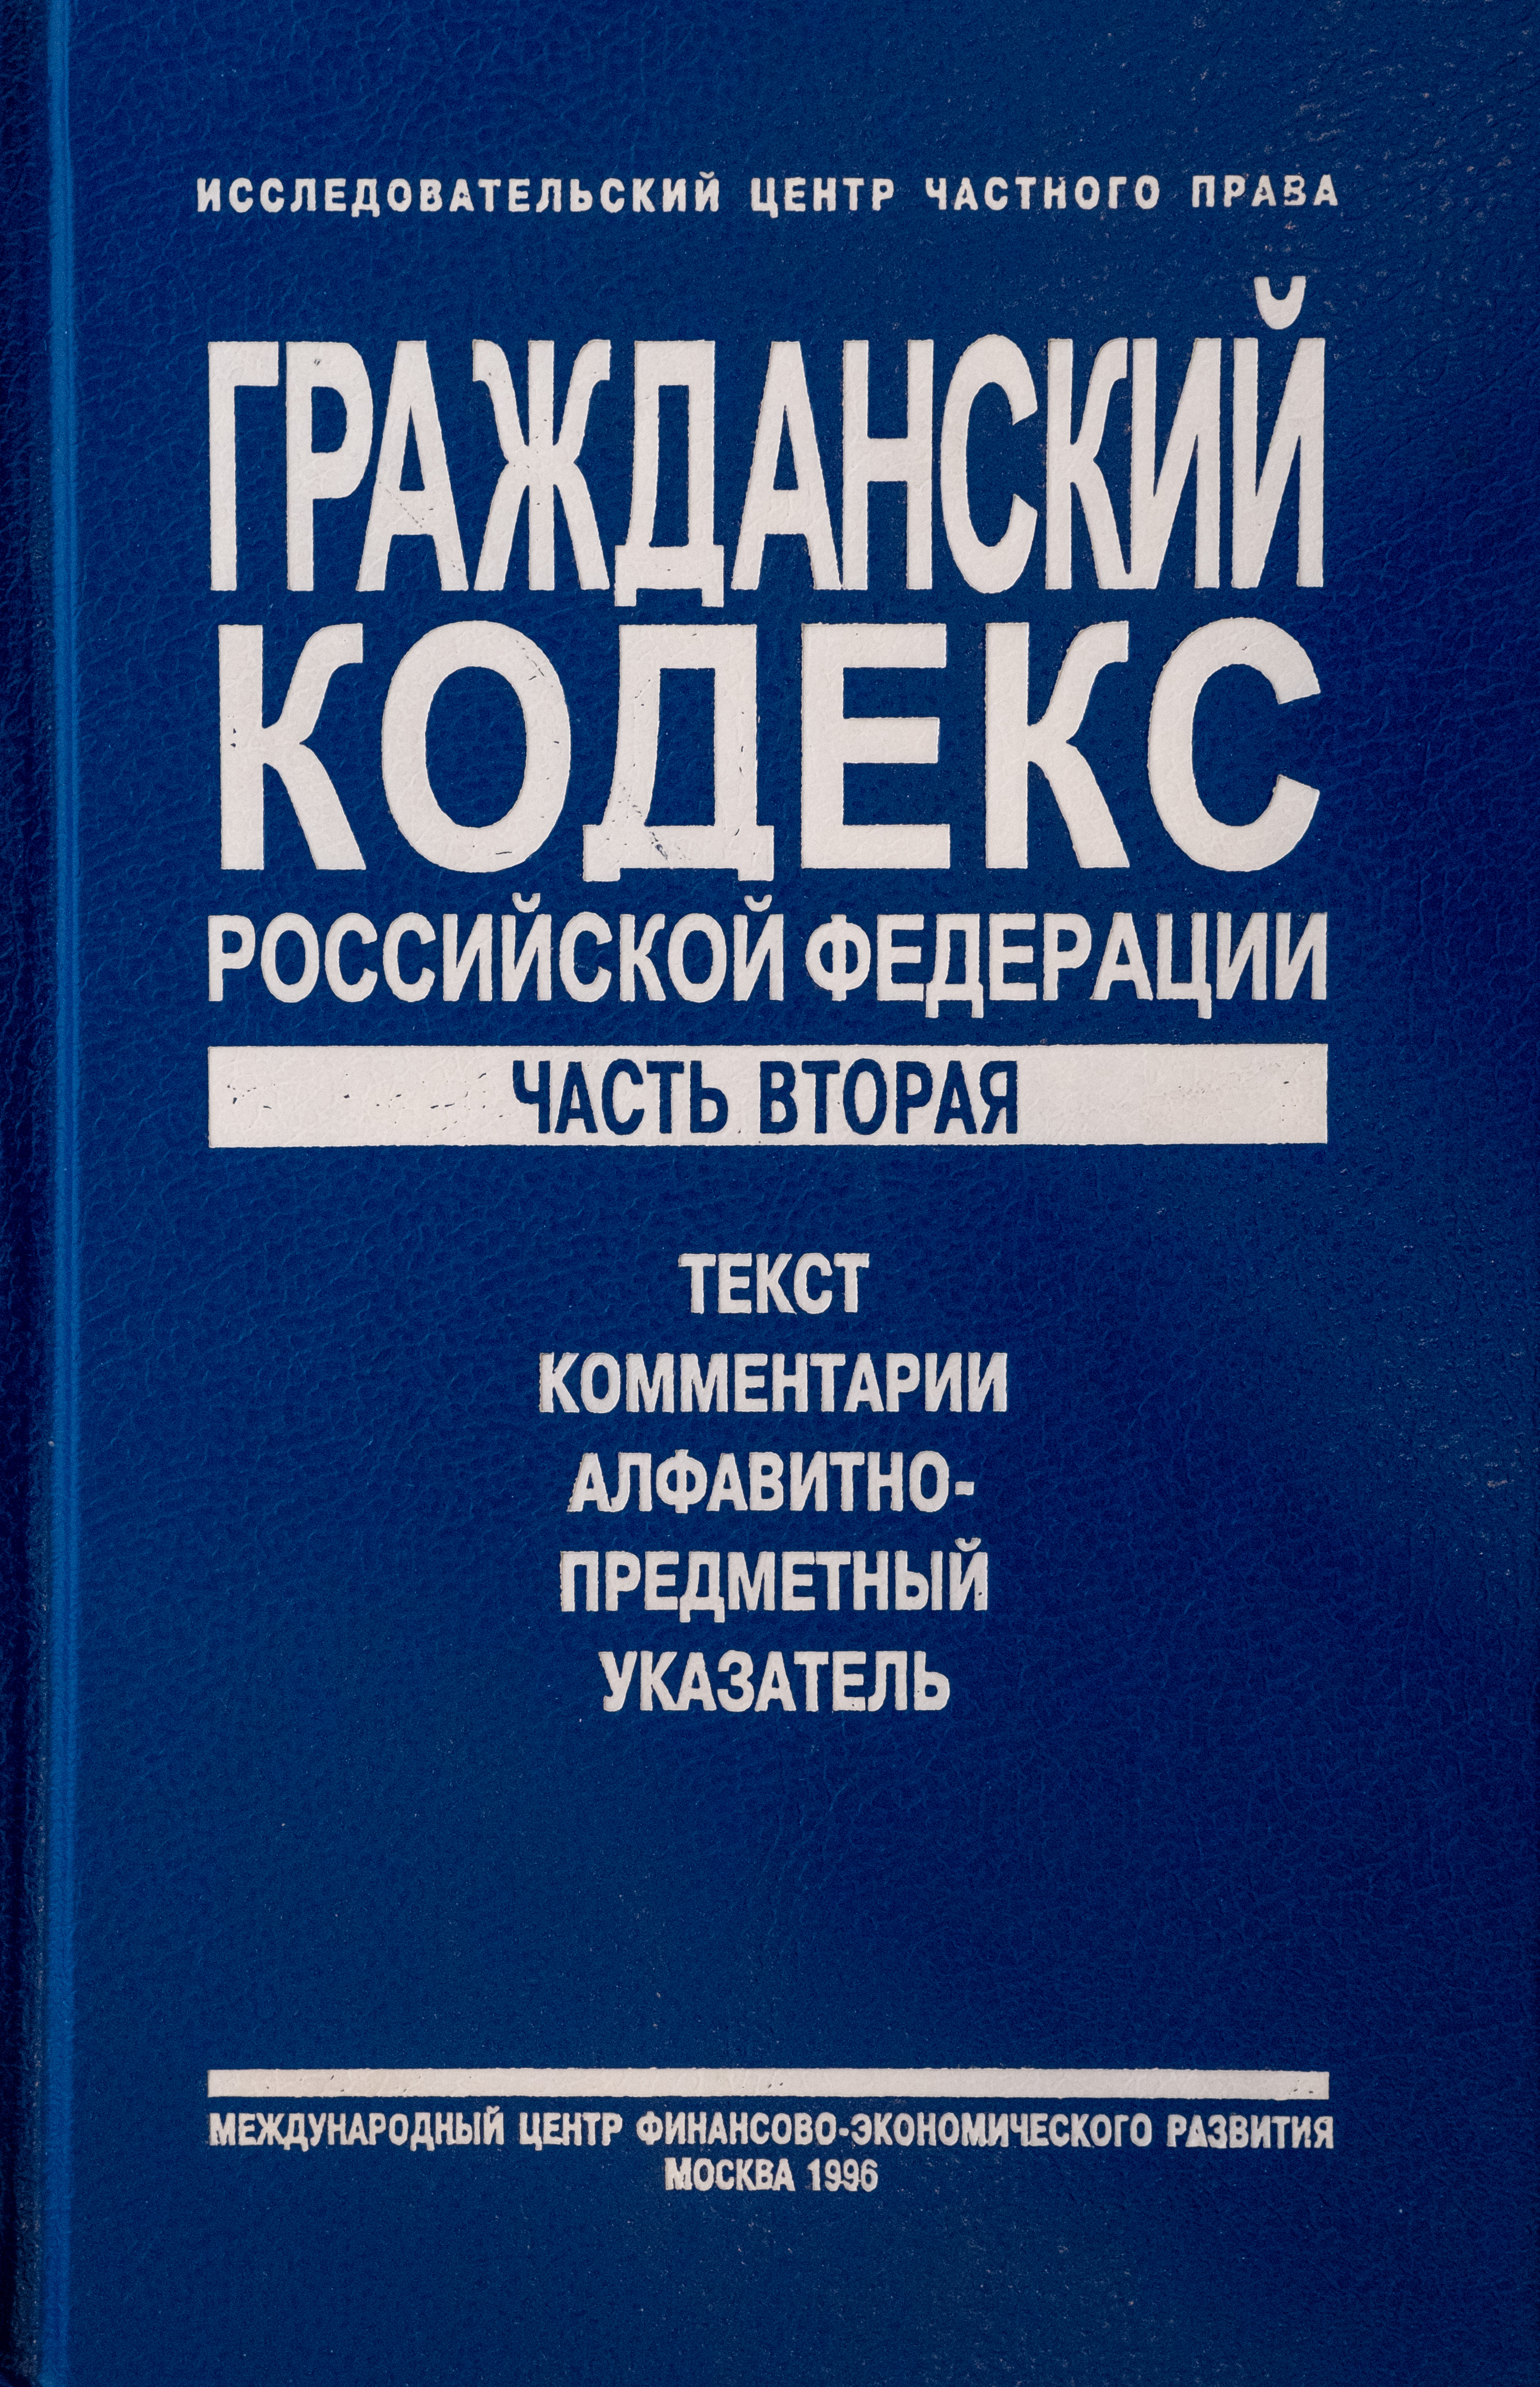 Гражданский кодекс Российской Федерации. Часть вторая. Текст, комментарии, алфавитно-предметный указатель